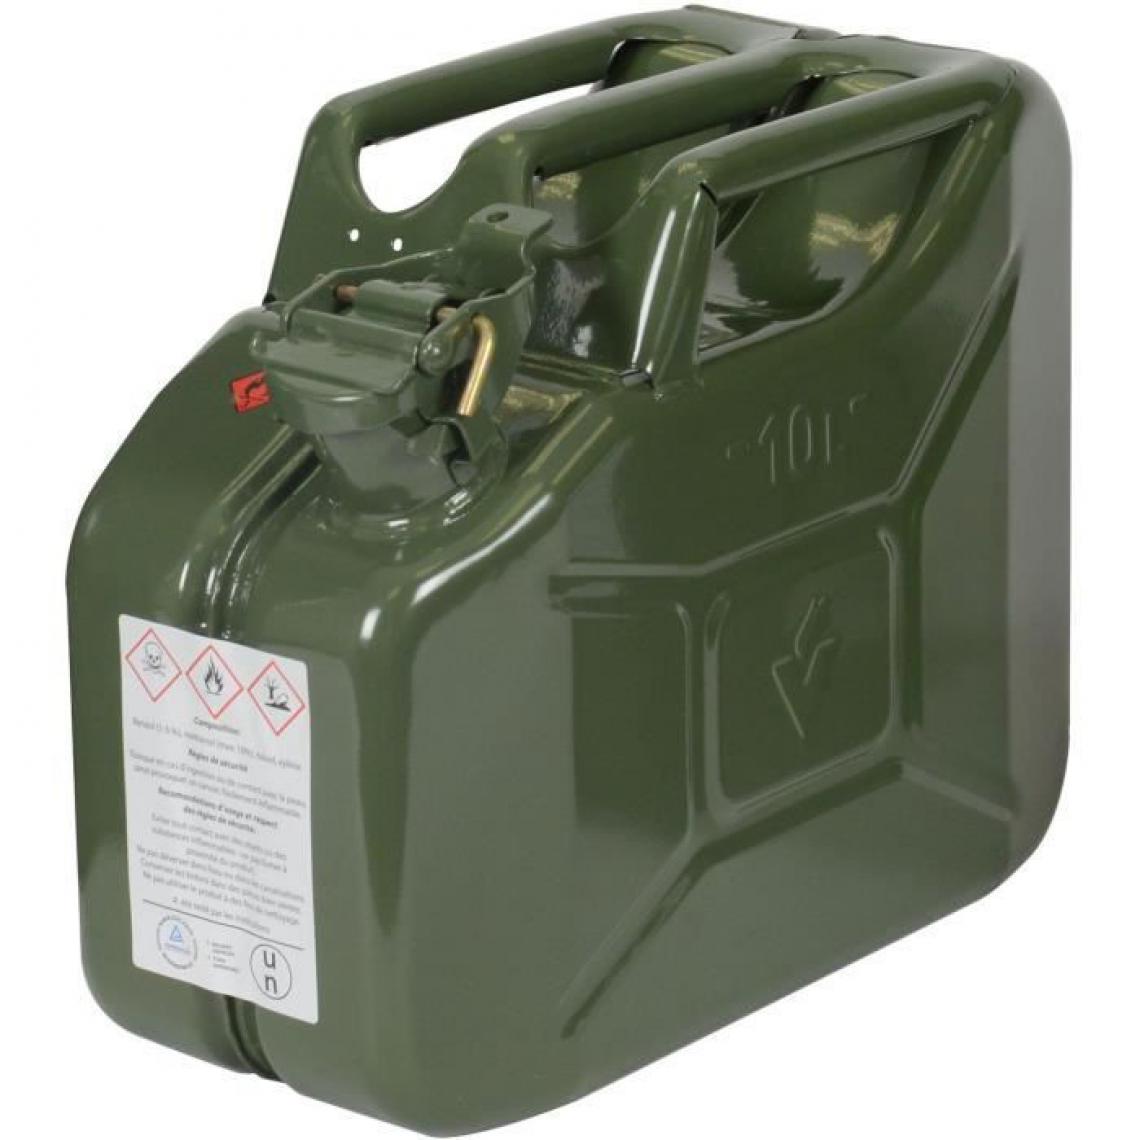 Axis Communication - JARDIN PRATIC Jerrican en metal - 10L - vert armée - Consommables pour outillage motorisé